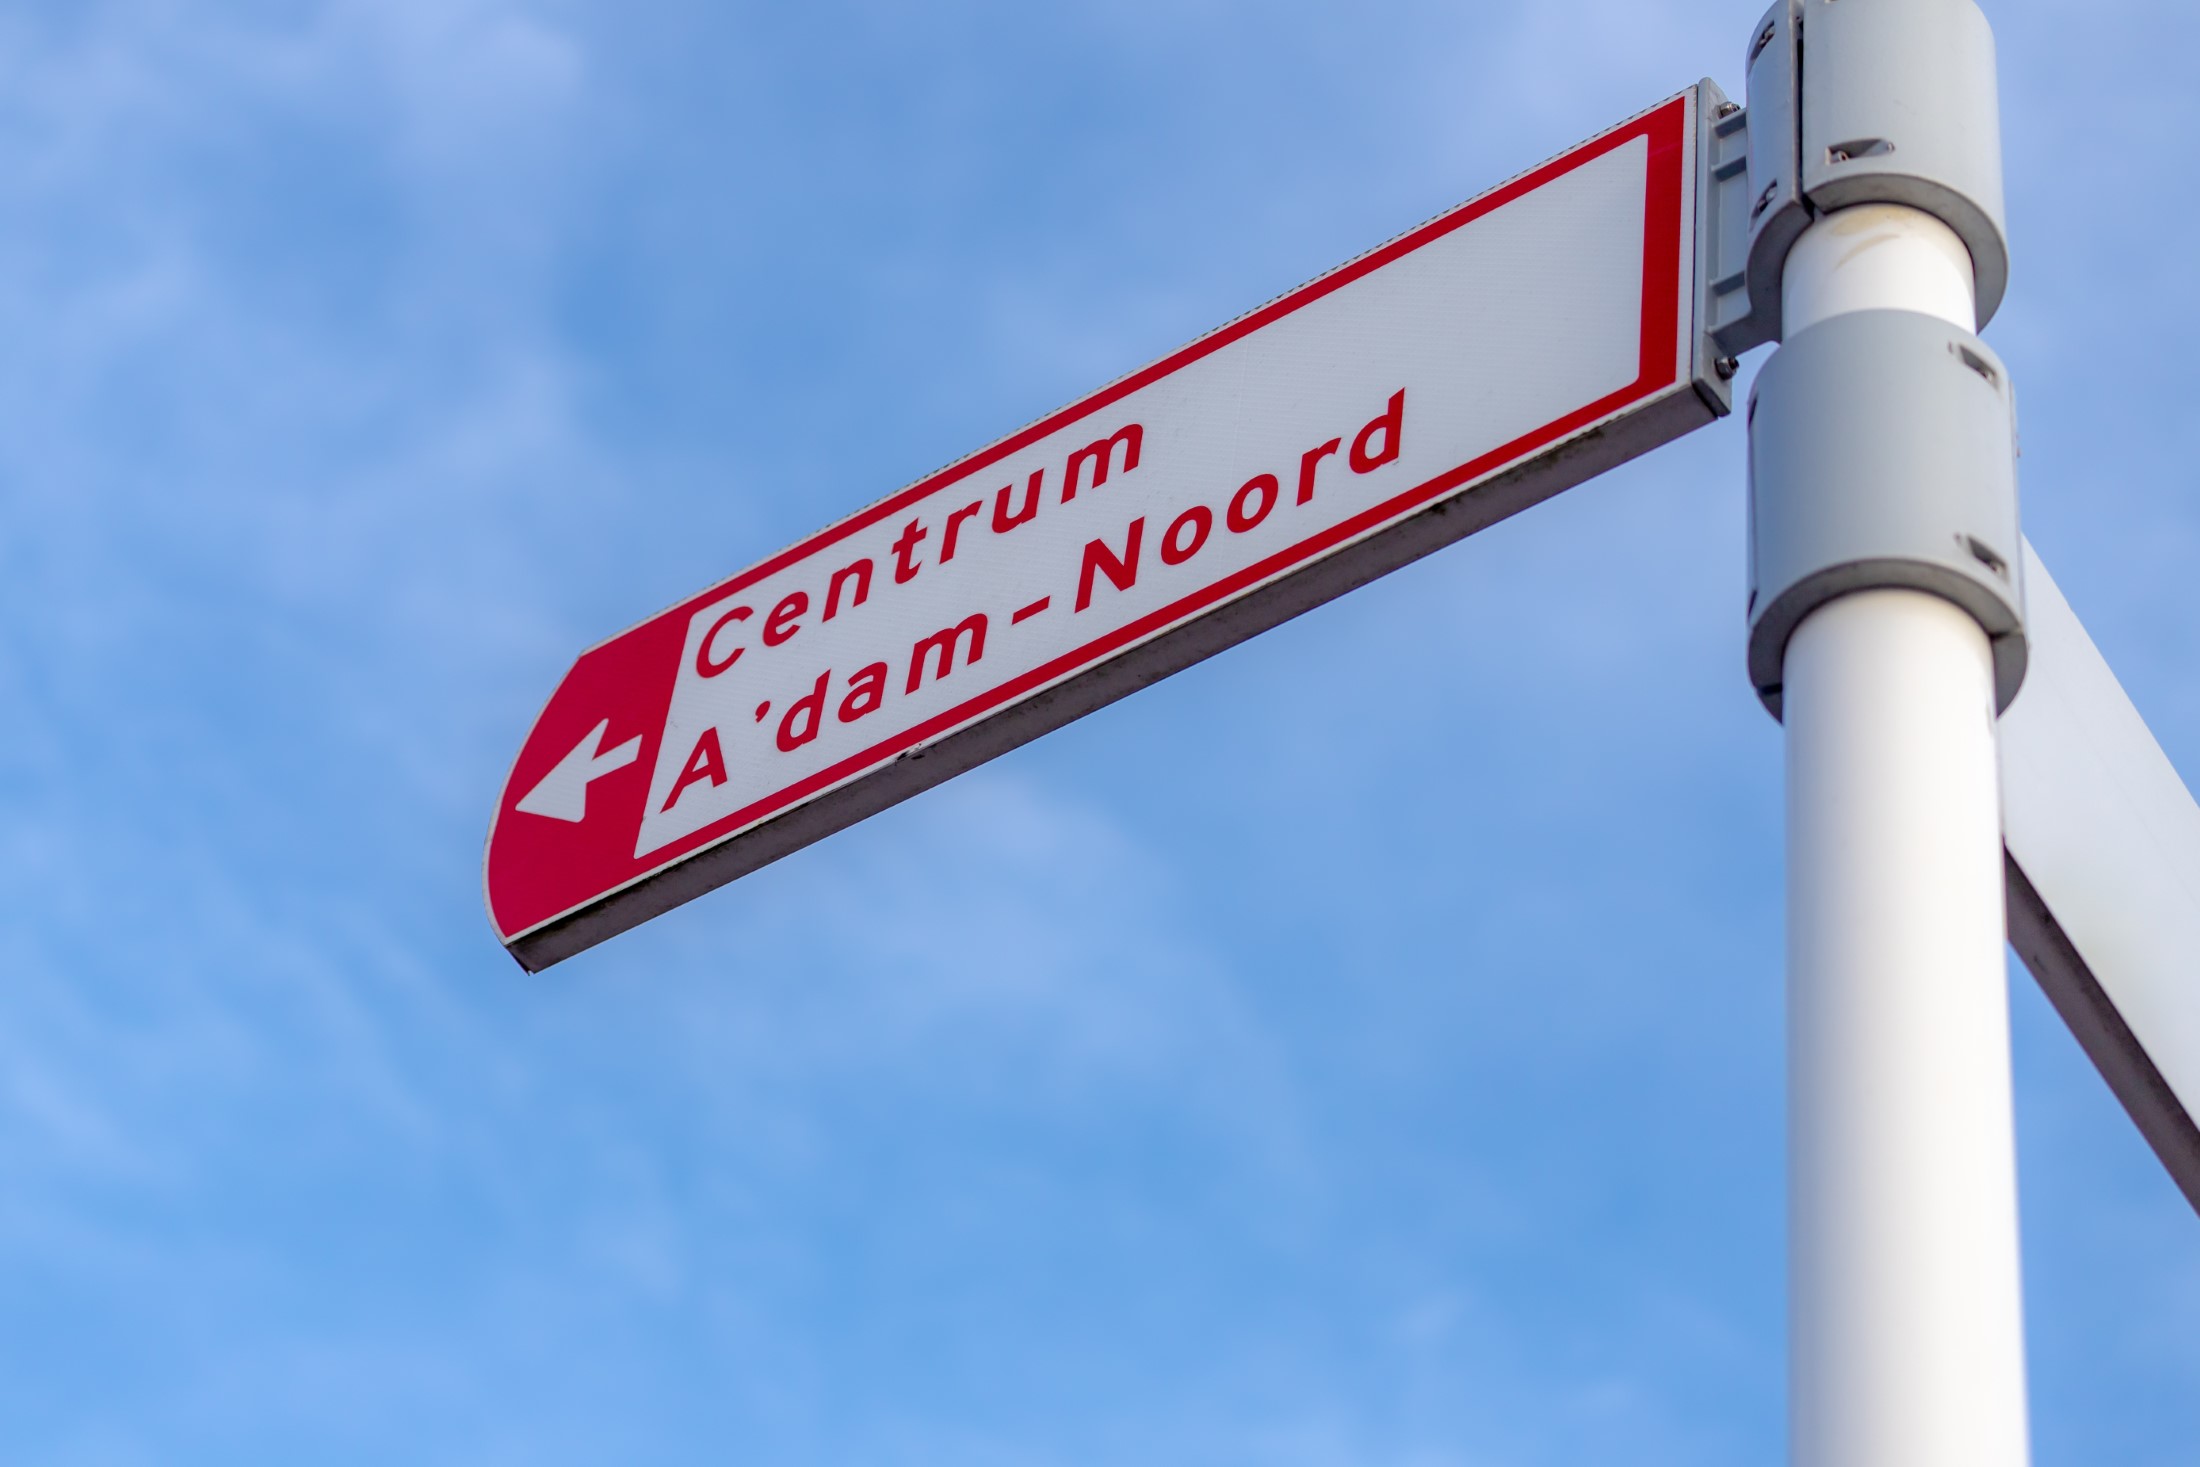 Selektywne skupienie tablicy znaków przewodnika w centrum miasta pod błękitnym niebem jako tło, poczta kierunkowa do Centrum (centrum) A'dam-Noord (Amsterdam North) Holandia